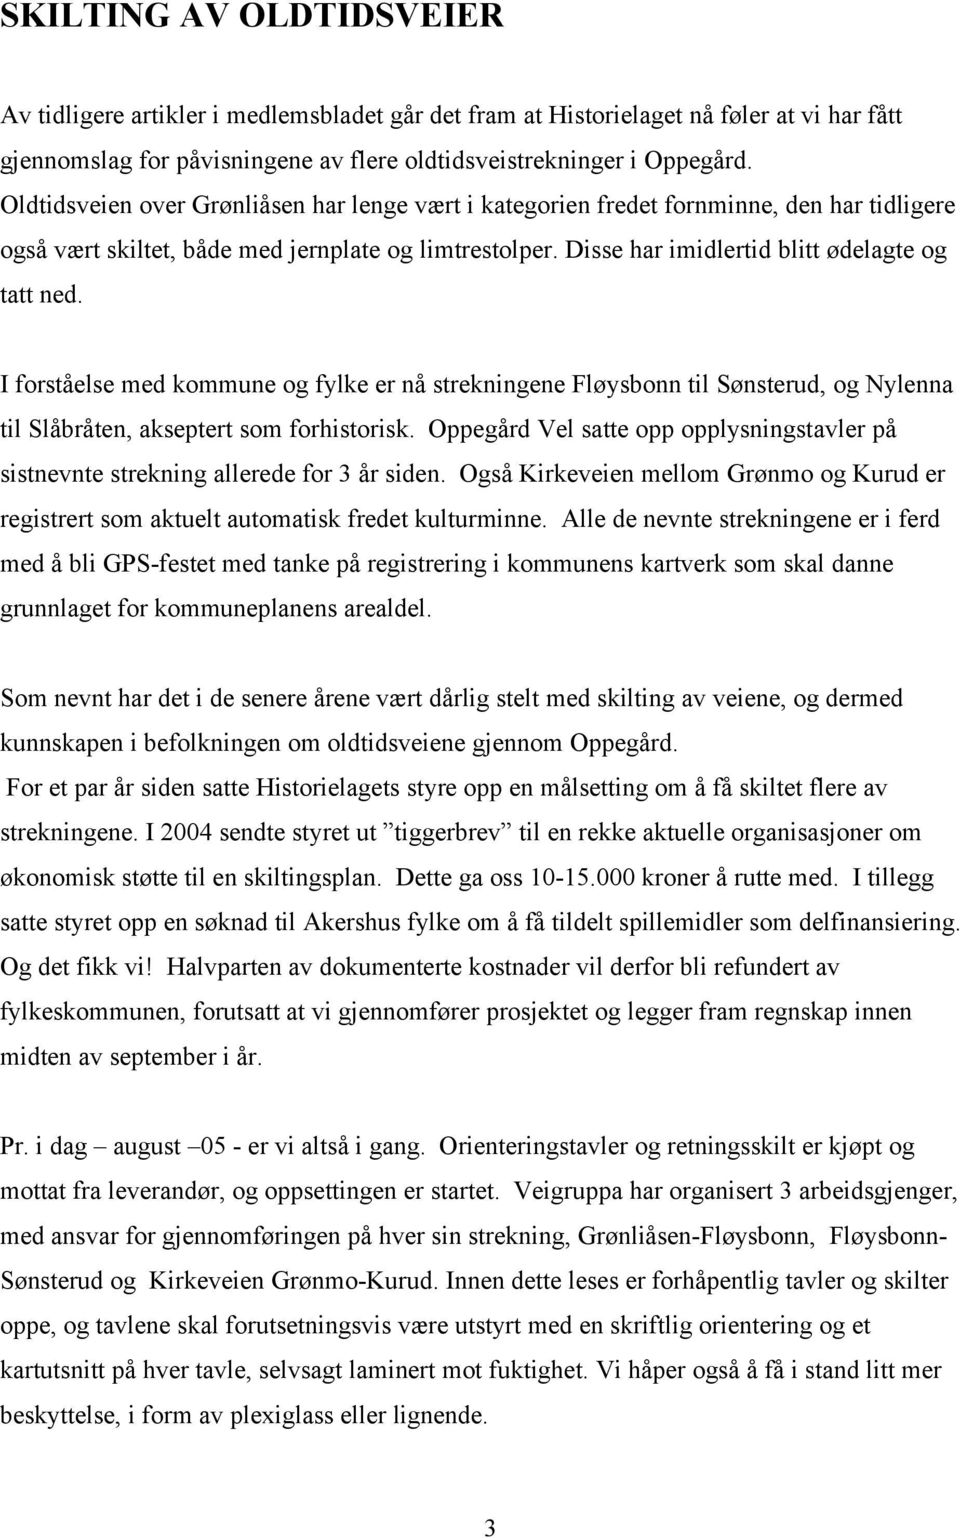 I forståelse med kommune og fylke er nå strekningene Fløysbonn til Sønsterud, og Nylenna til Slåbråten, akseptert som forhistorisk.